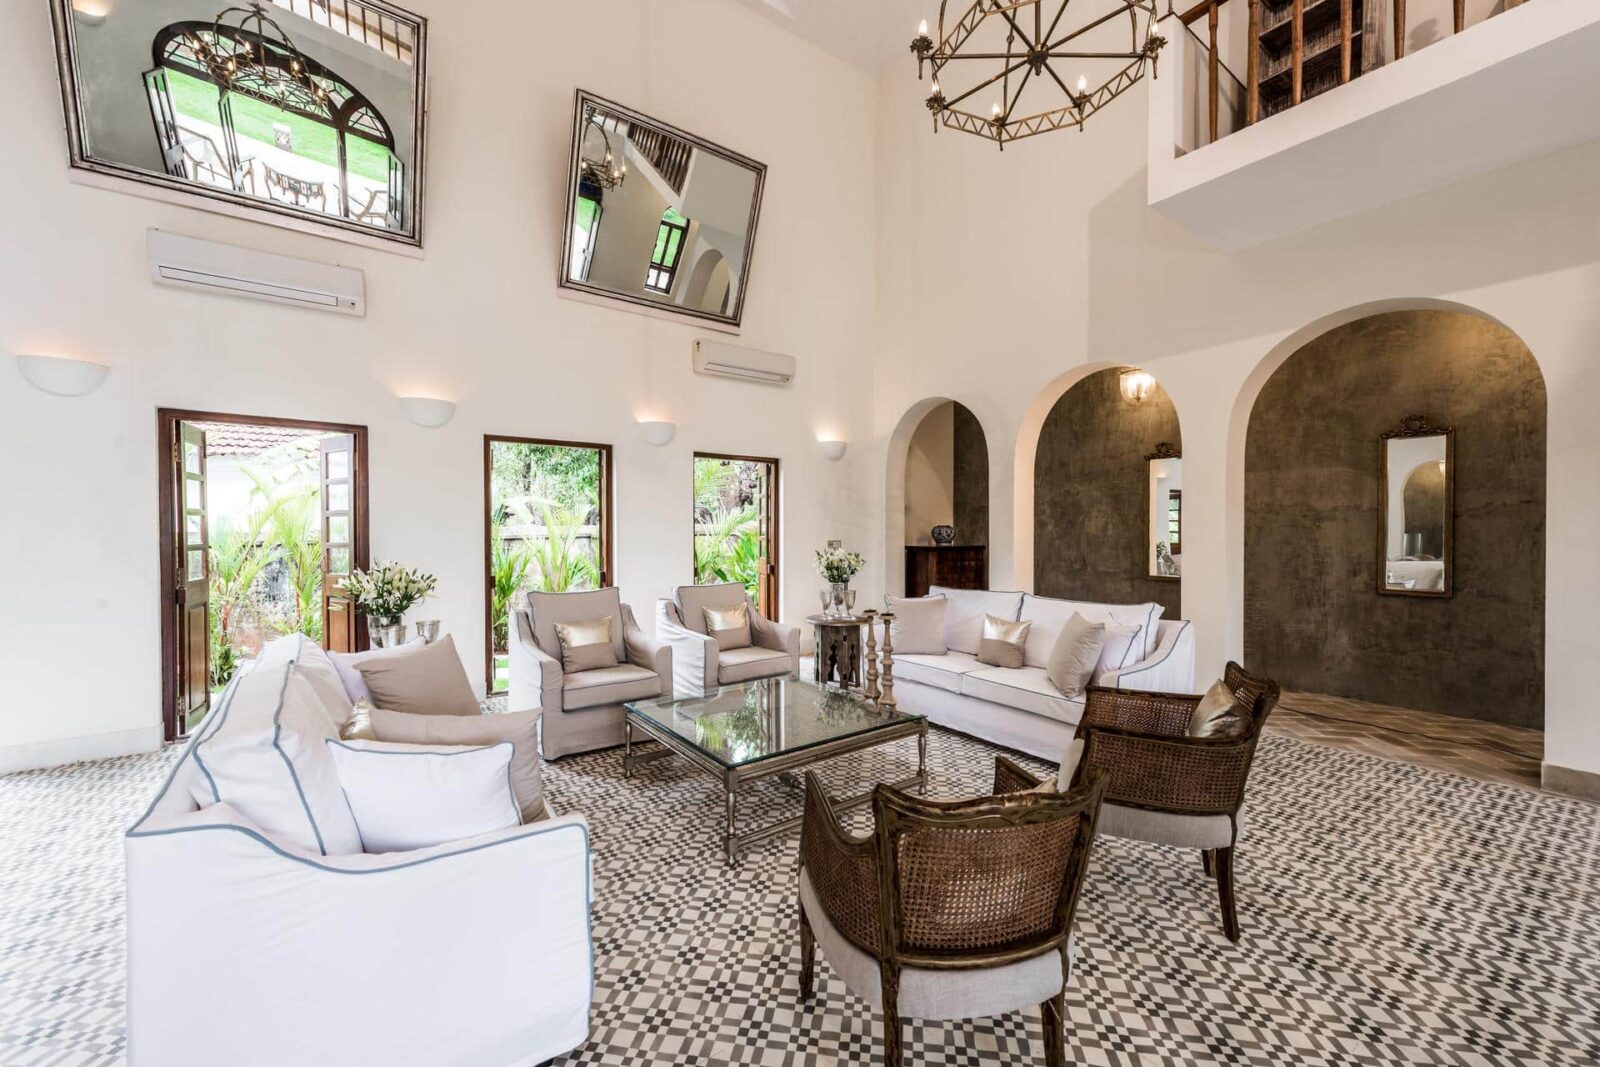 Villa Cecelia - Goa Villas with Private Pool for Sale - Beautiful Interiors